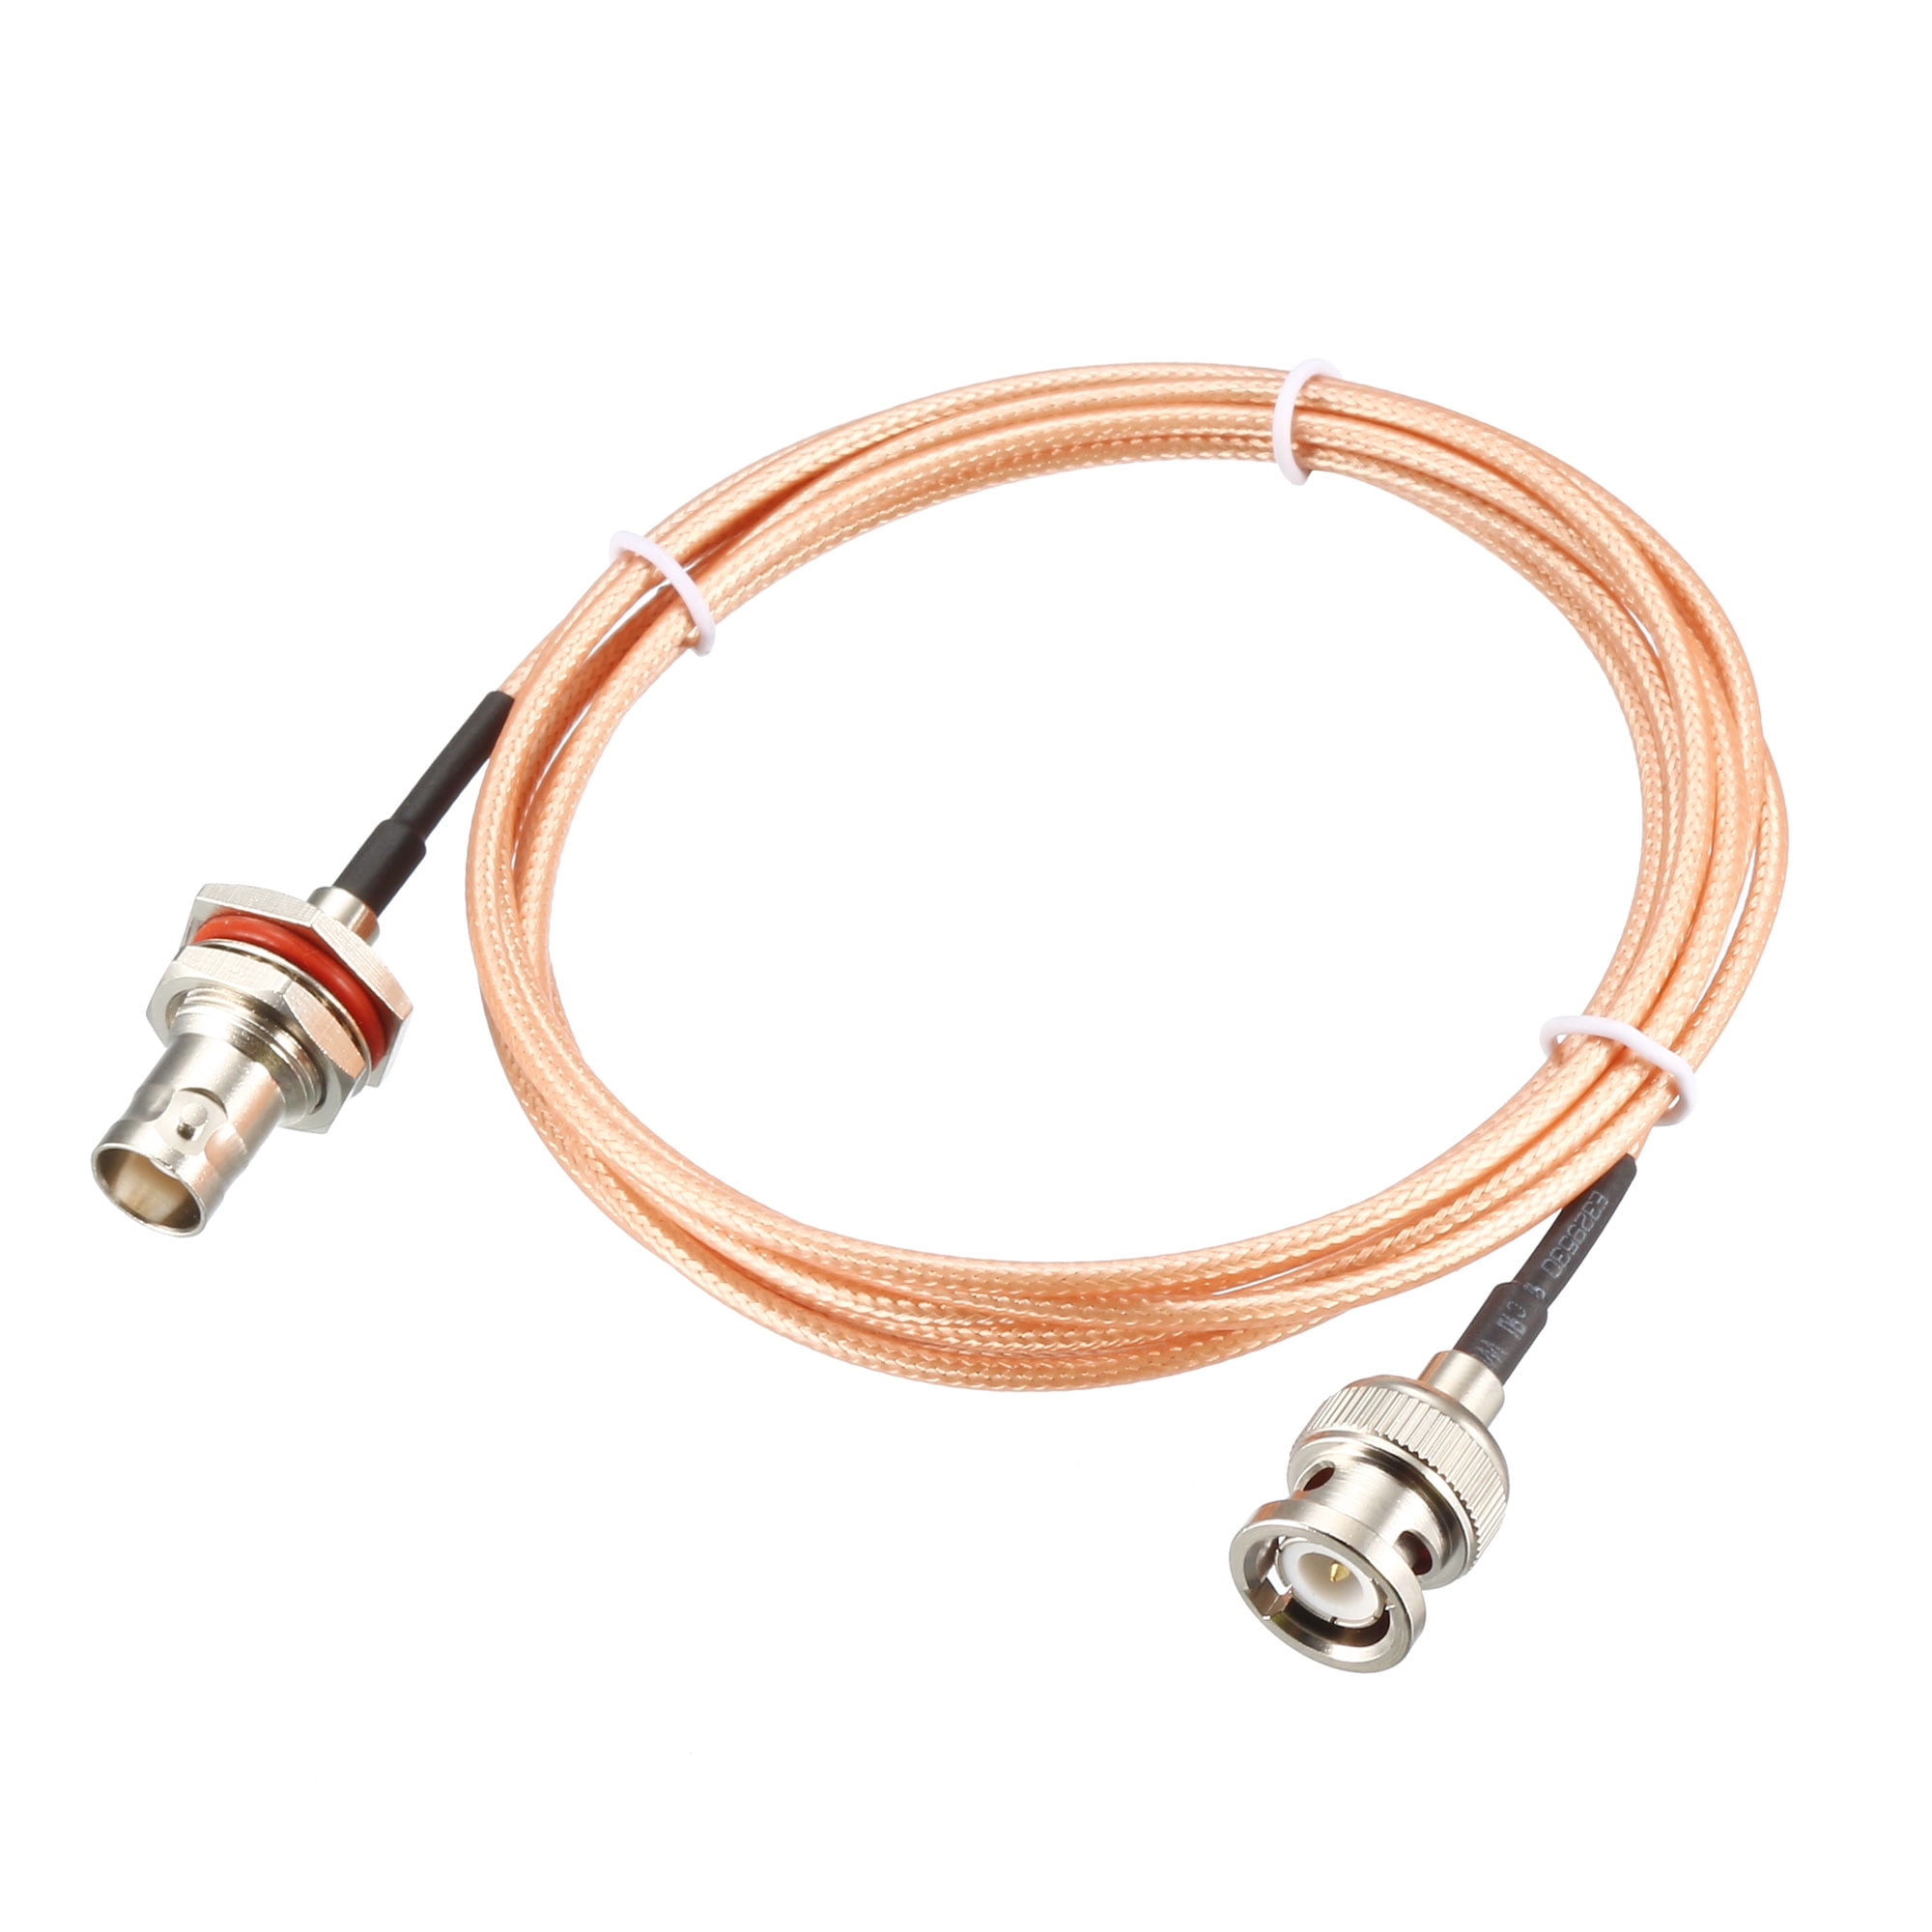 Cable BNC Male to BNC Bulkhead Female 50-Ohm Coax Low Loss RF RG316 